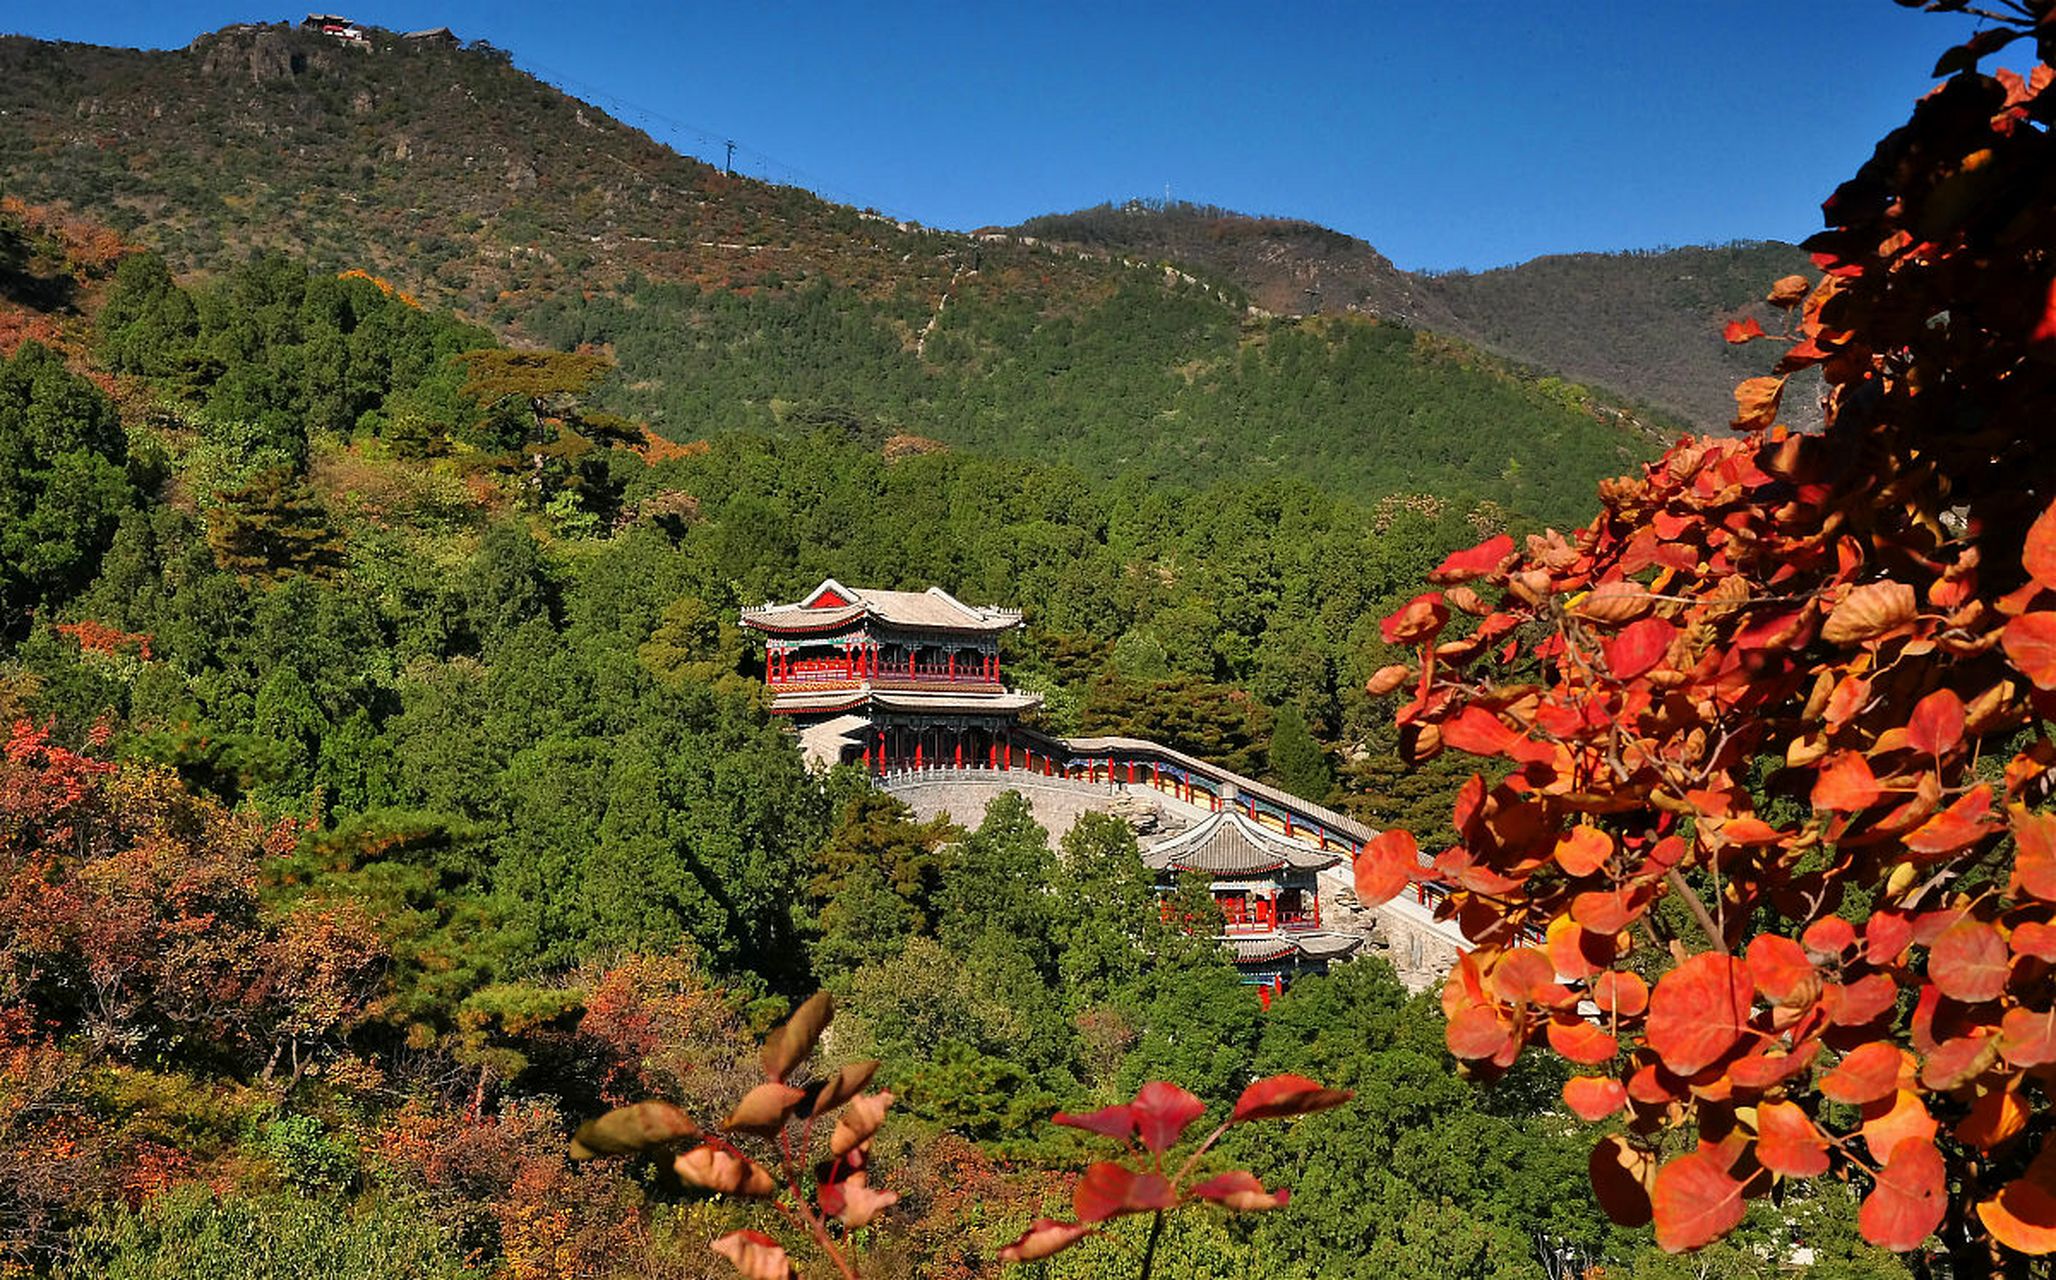 香山公园位于北京海淀中部,在小西山之山脉东麓,面积约160公顷